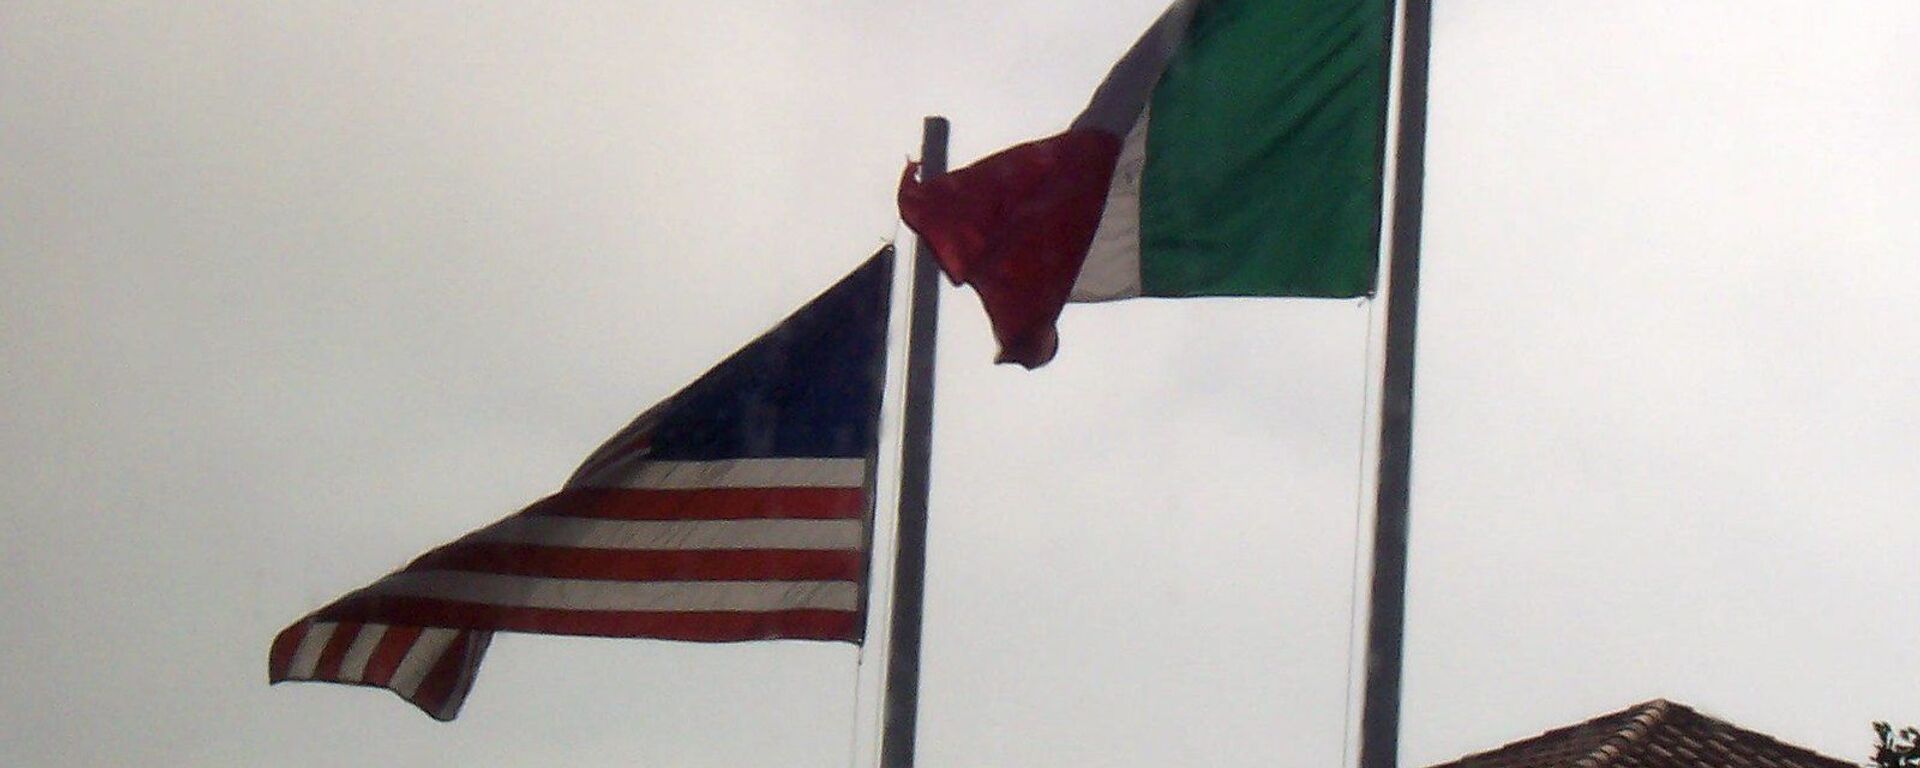 Banderas de EEUU y México - Sputnik Mundo, 1920, 01.03.2021